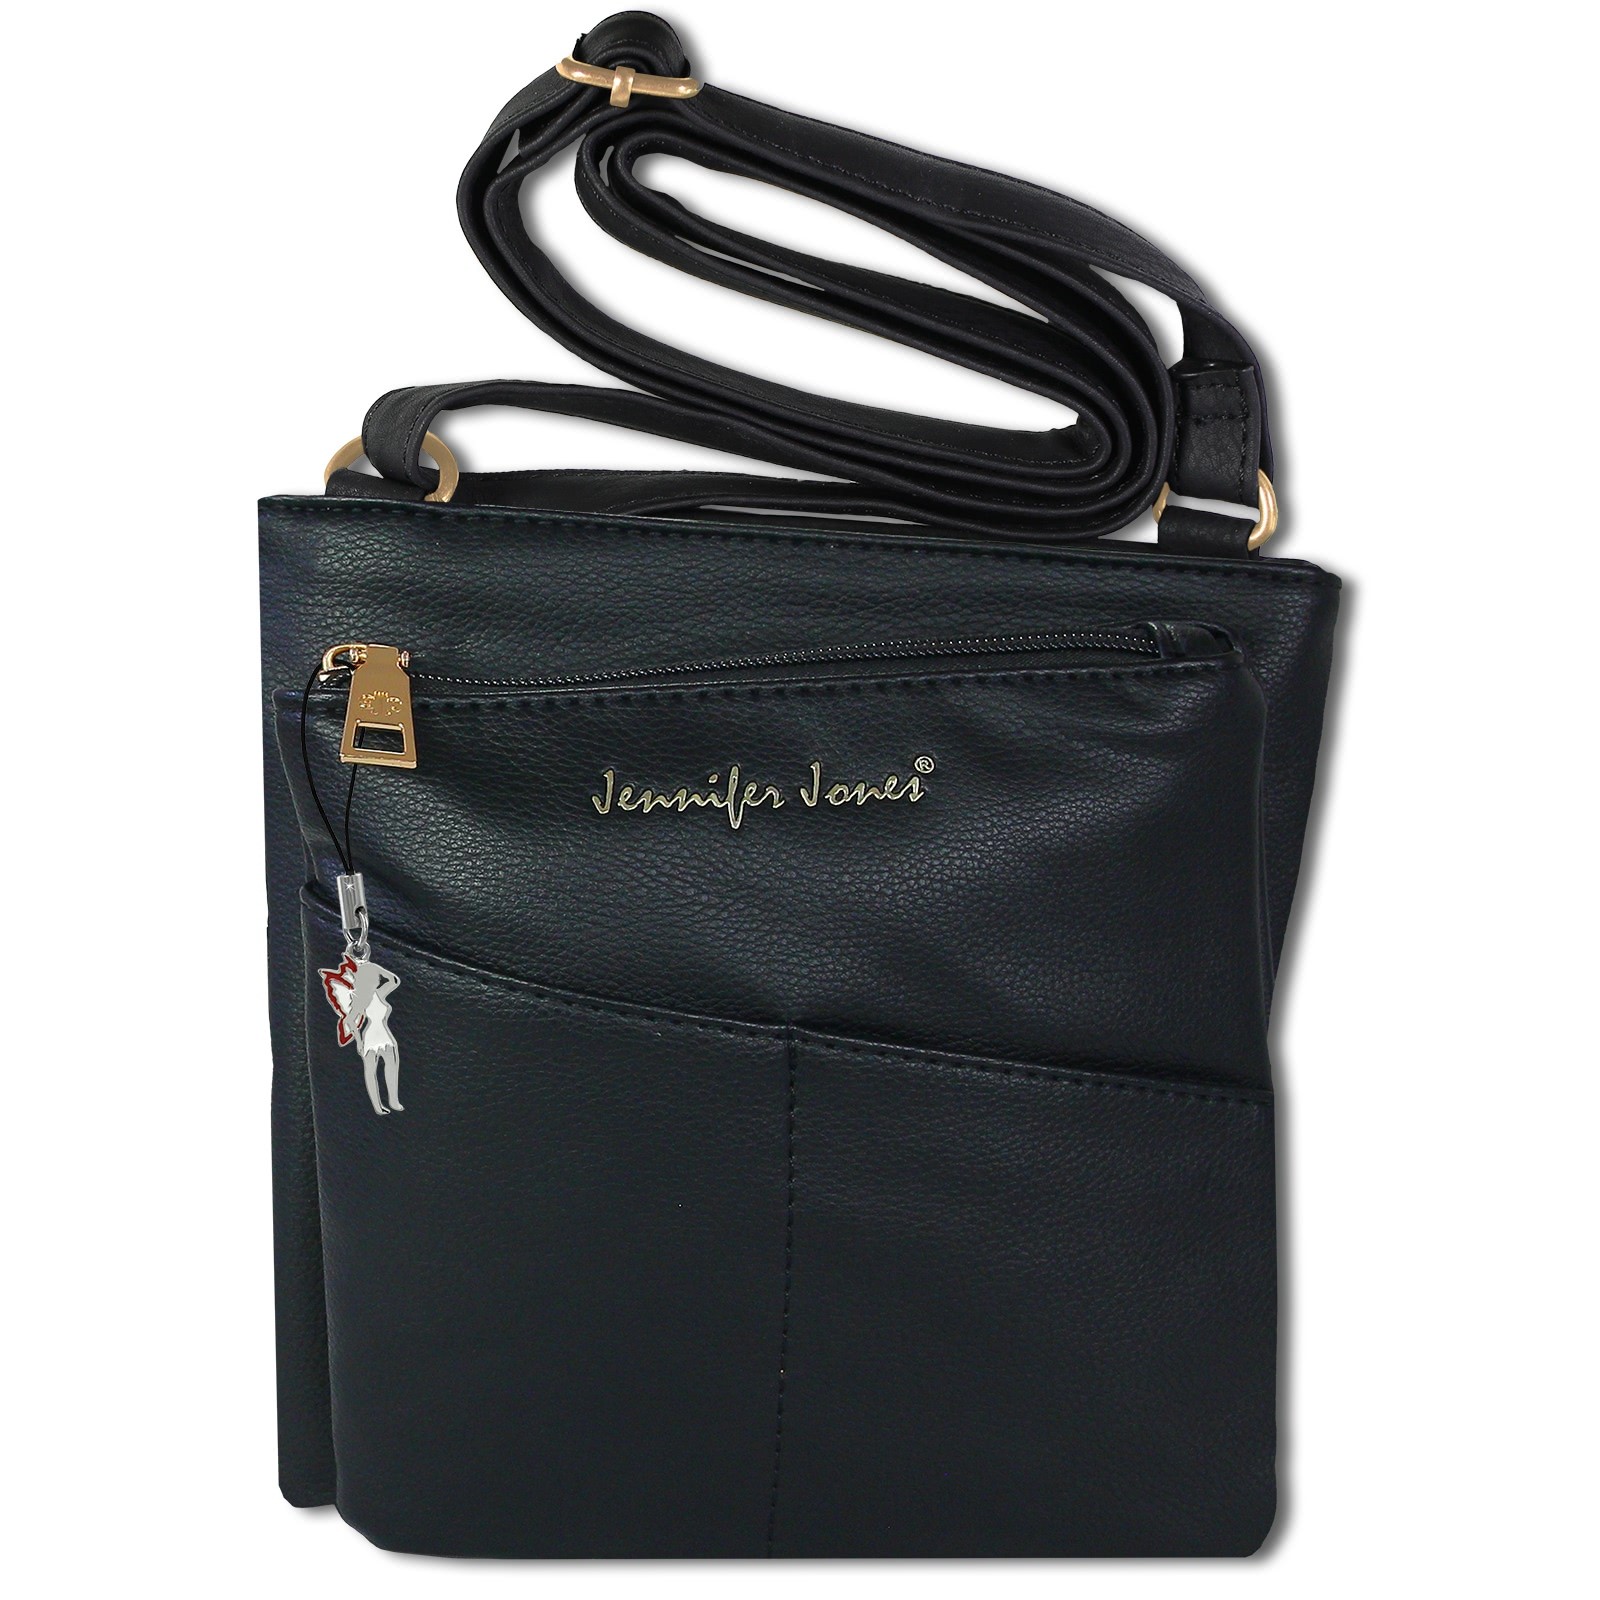 Jennifer Jones Umhängetasche Abendtasche schwarz Damen Schultertasche OTJ141S